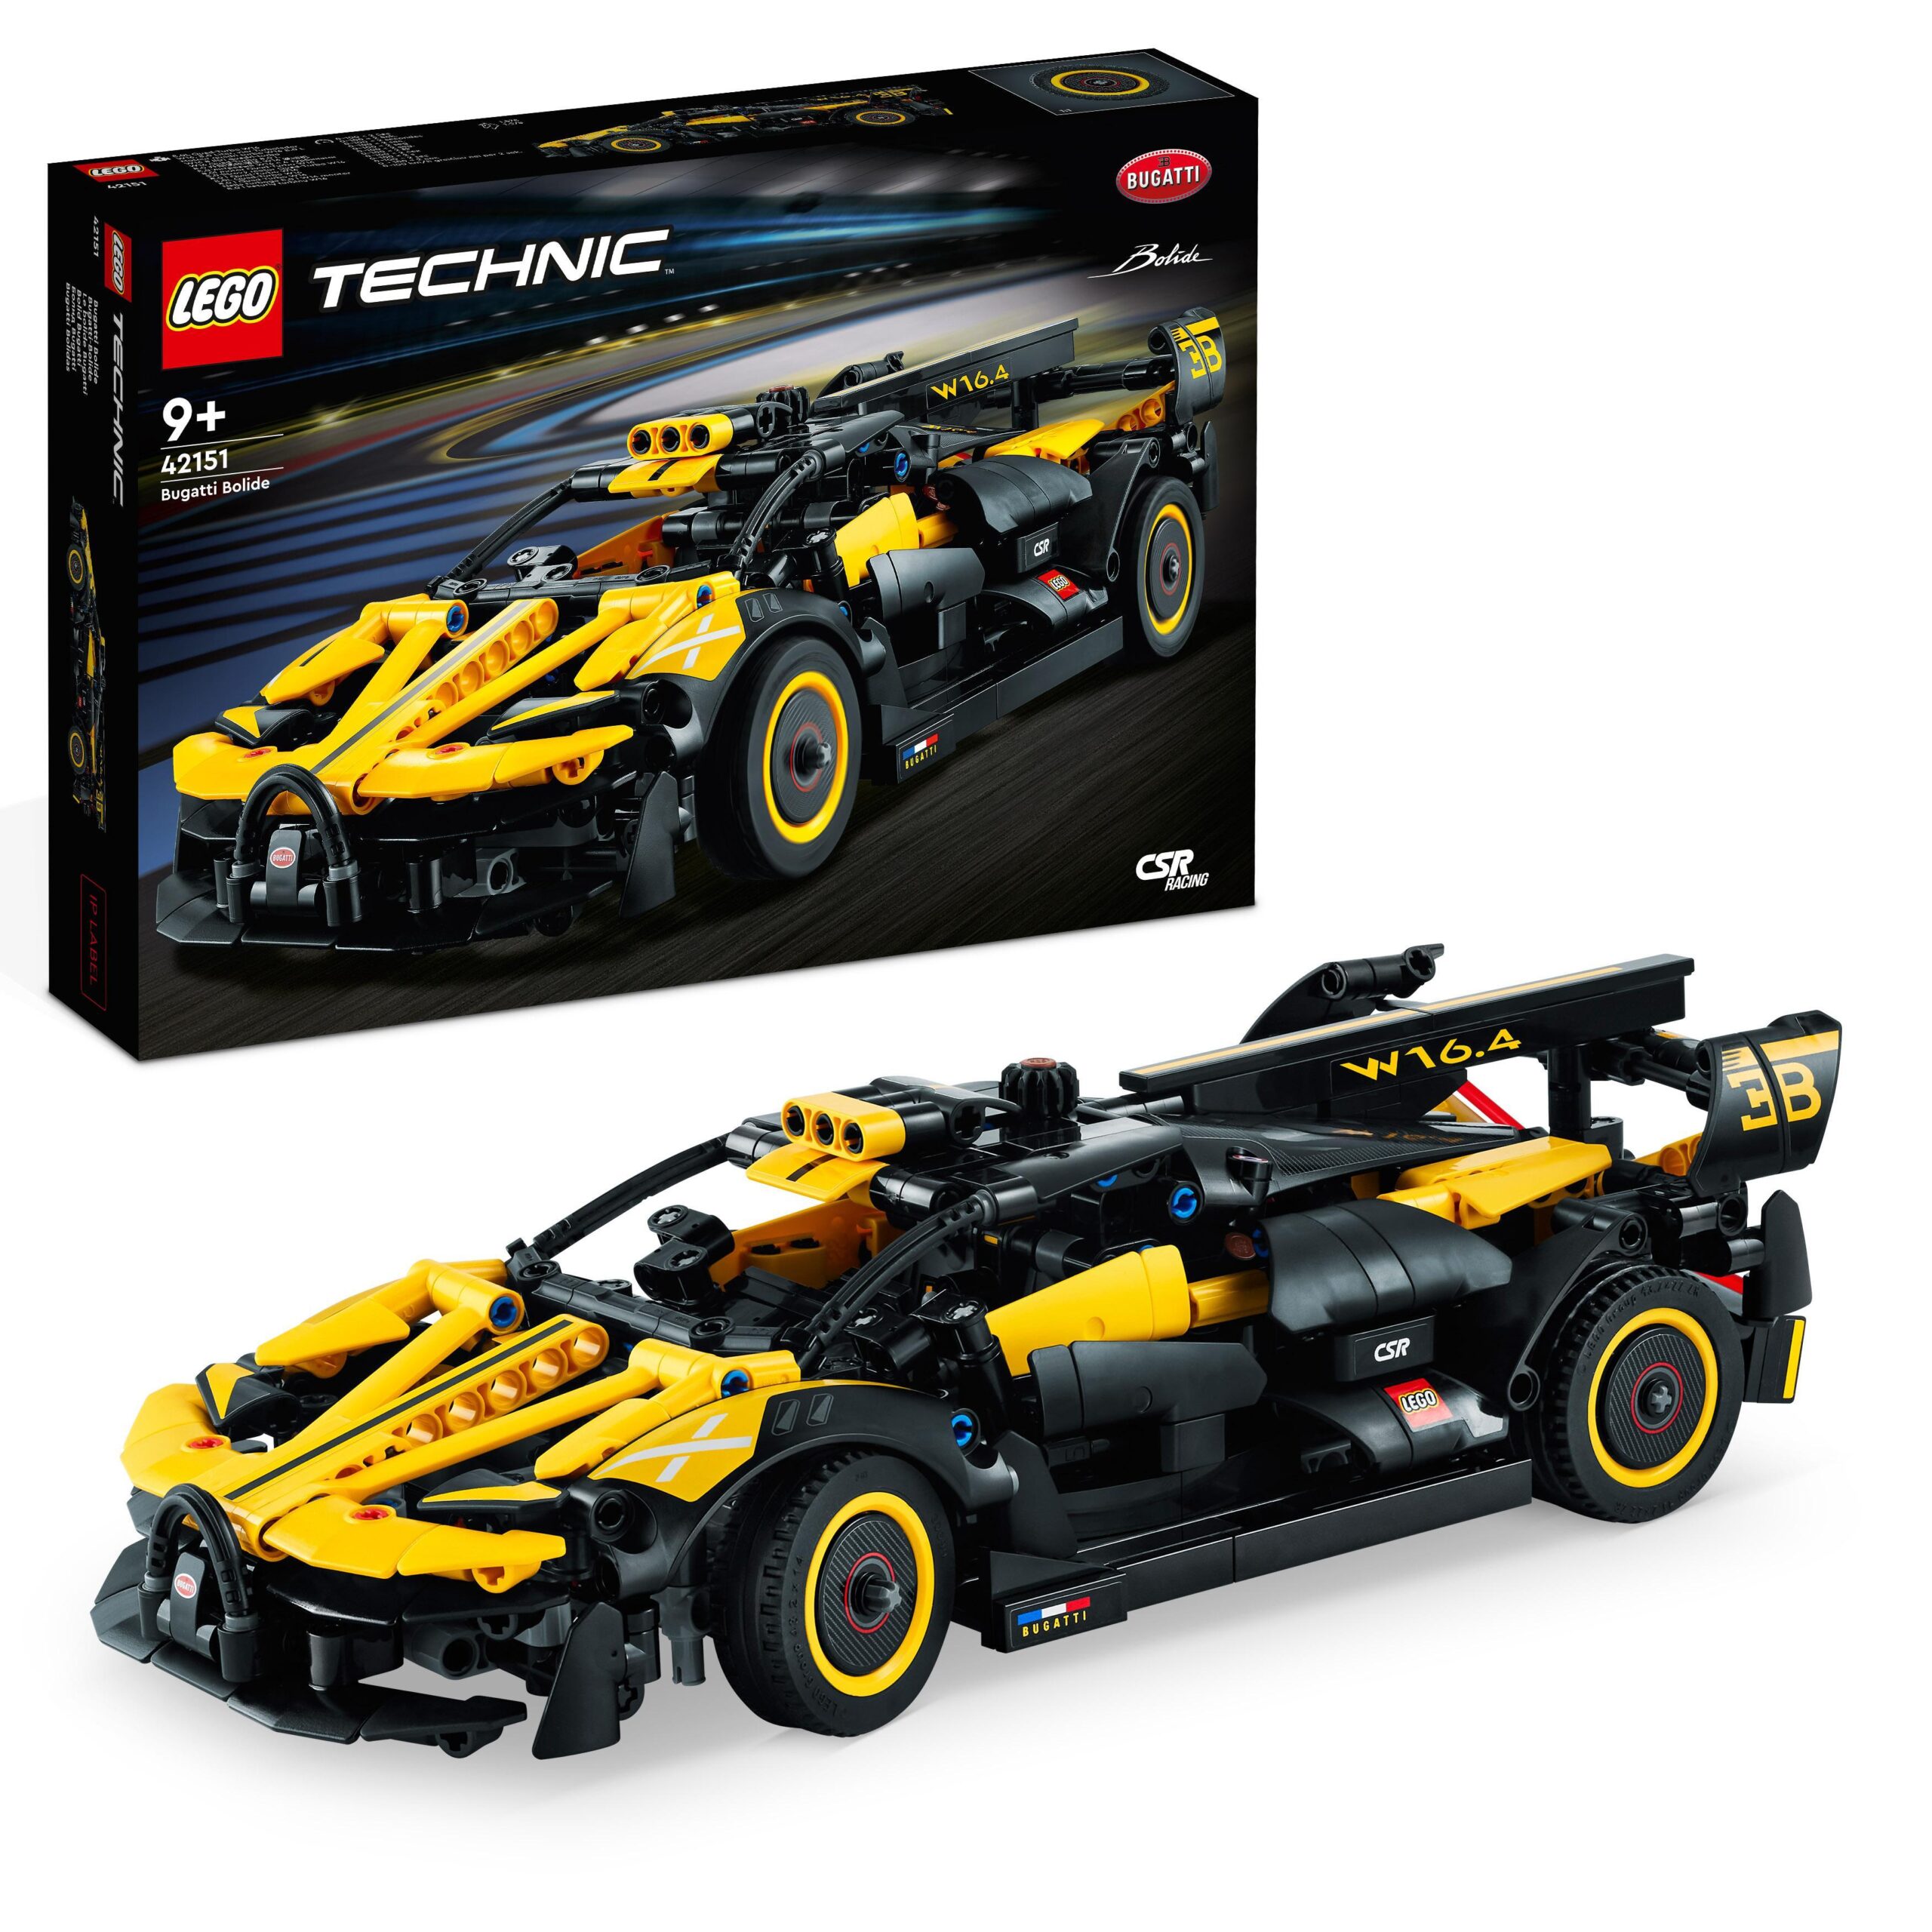 LEGO Technic 42163 Bulldozer da Cantiere, Giochi per Bambini e Bambine di  7+ Anni, Regalo per Amanti dei Veicoli Giocattolo - LEGO - Technic - Mezzi  pesanti - Giocattoli